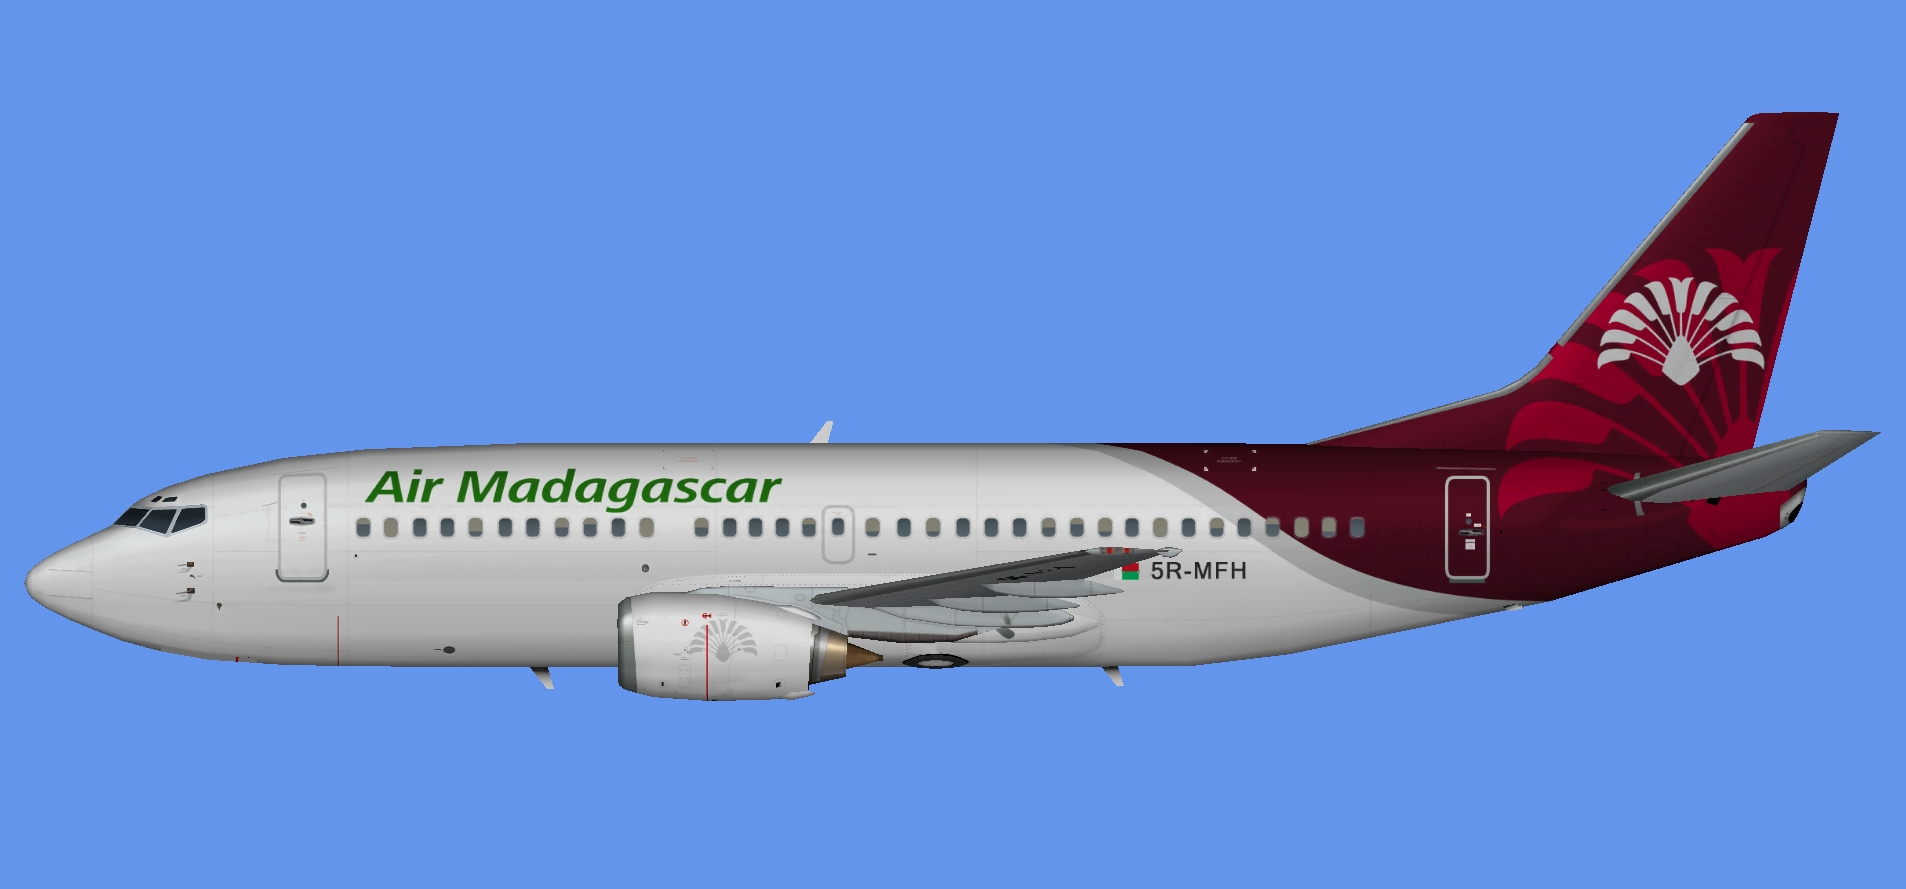 Air Madagascar Boeing 737-300